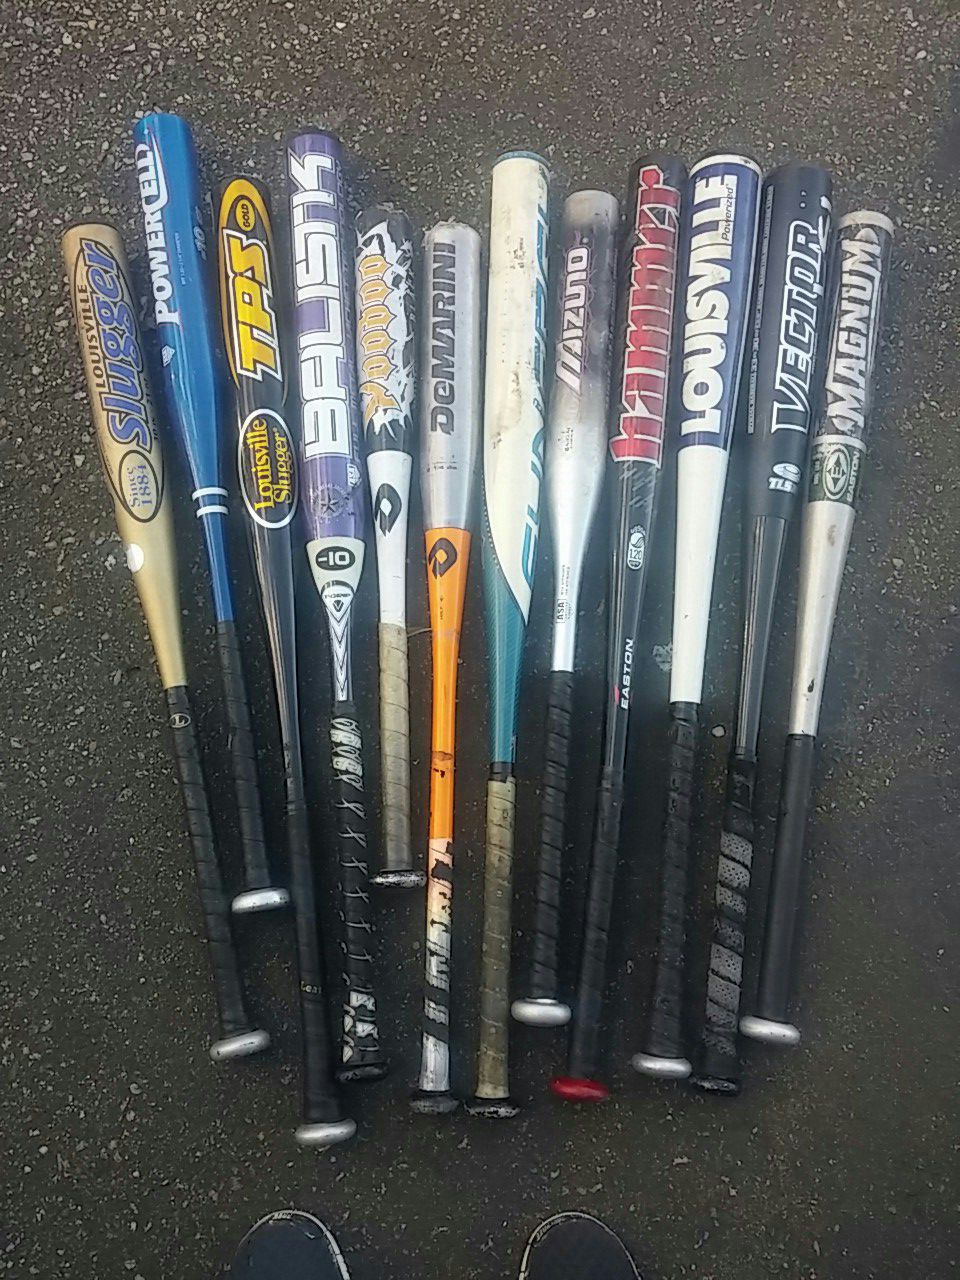 Aluminum softball baseball bats